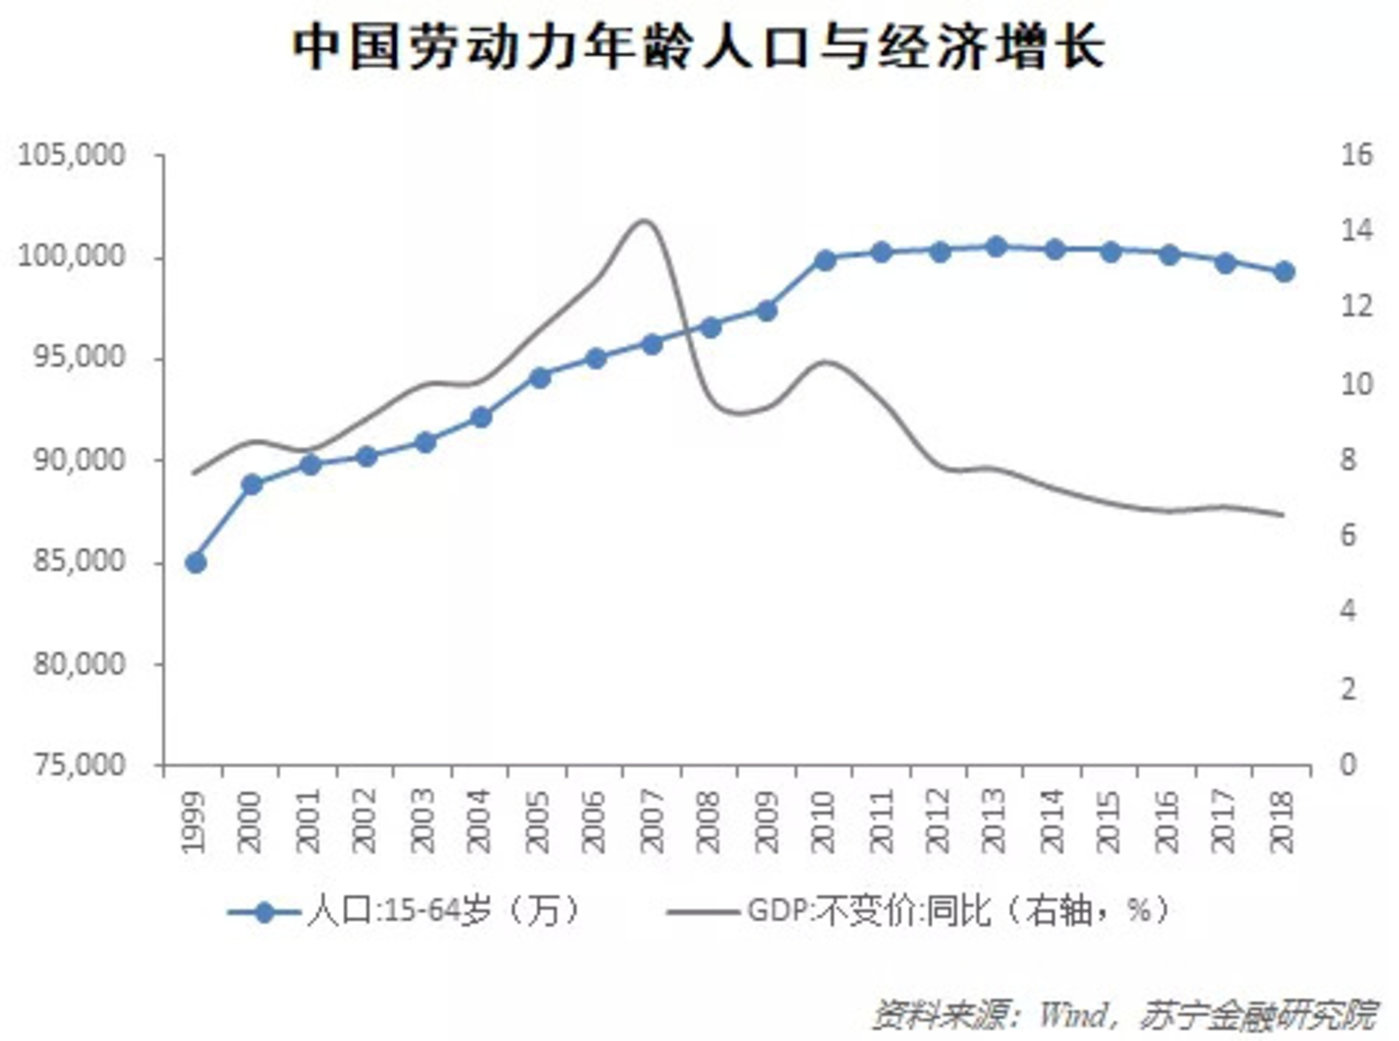 后人口红利时期,中国靠什么支撑经济增长?